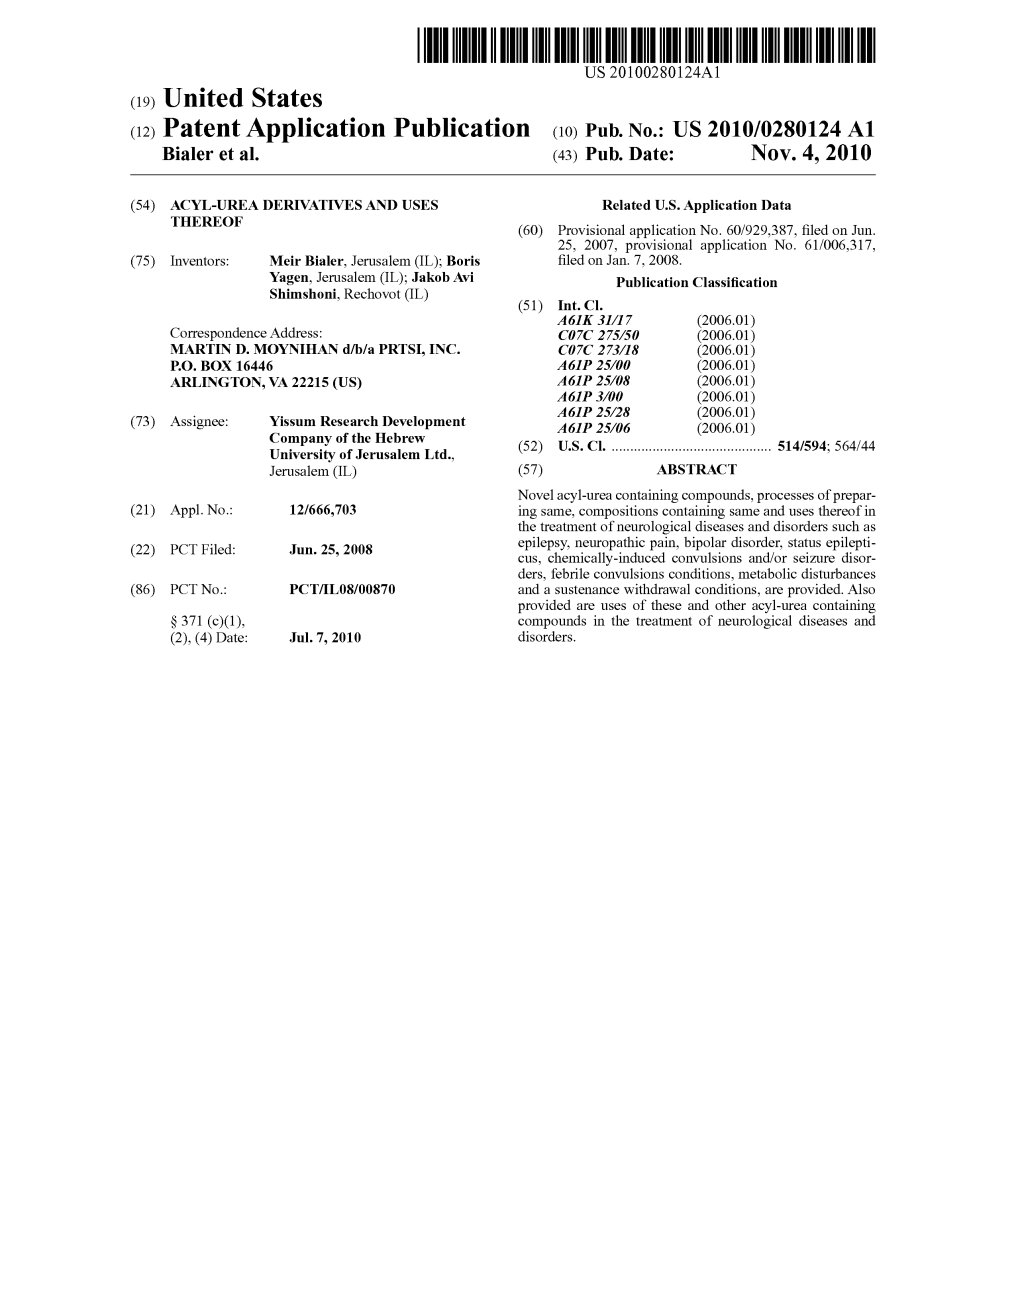 (12) Patent Application Publication (10) Pub. No.: US 2010/0280124 A1 Bialer Et Al